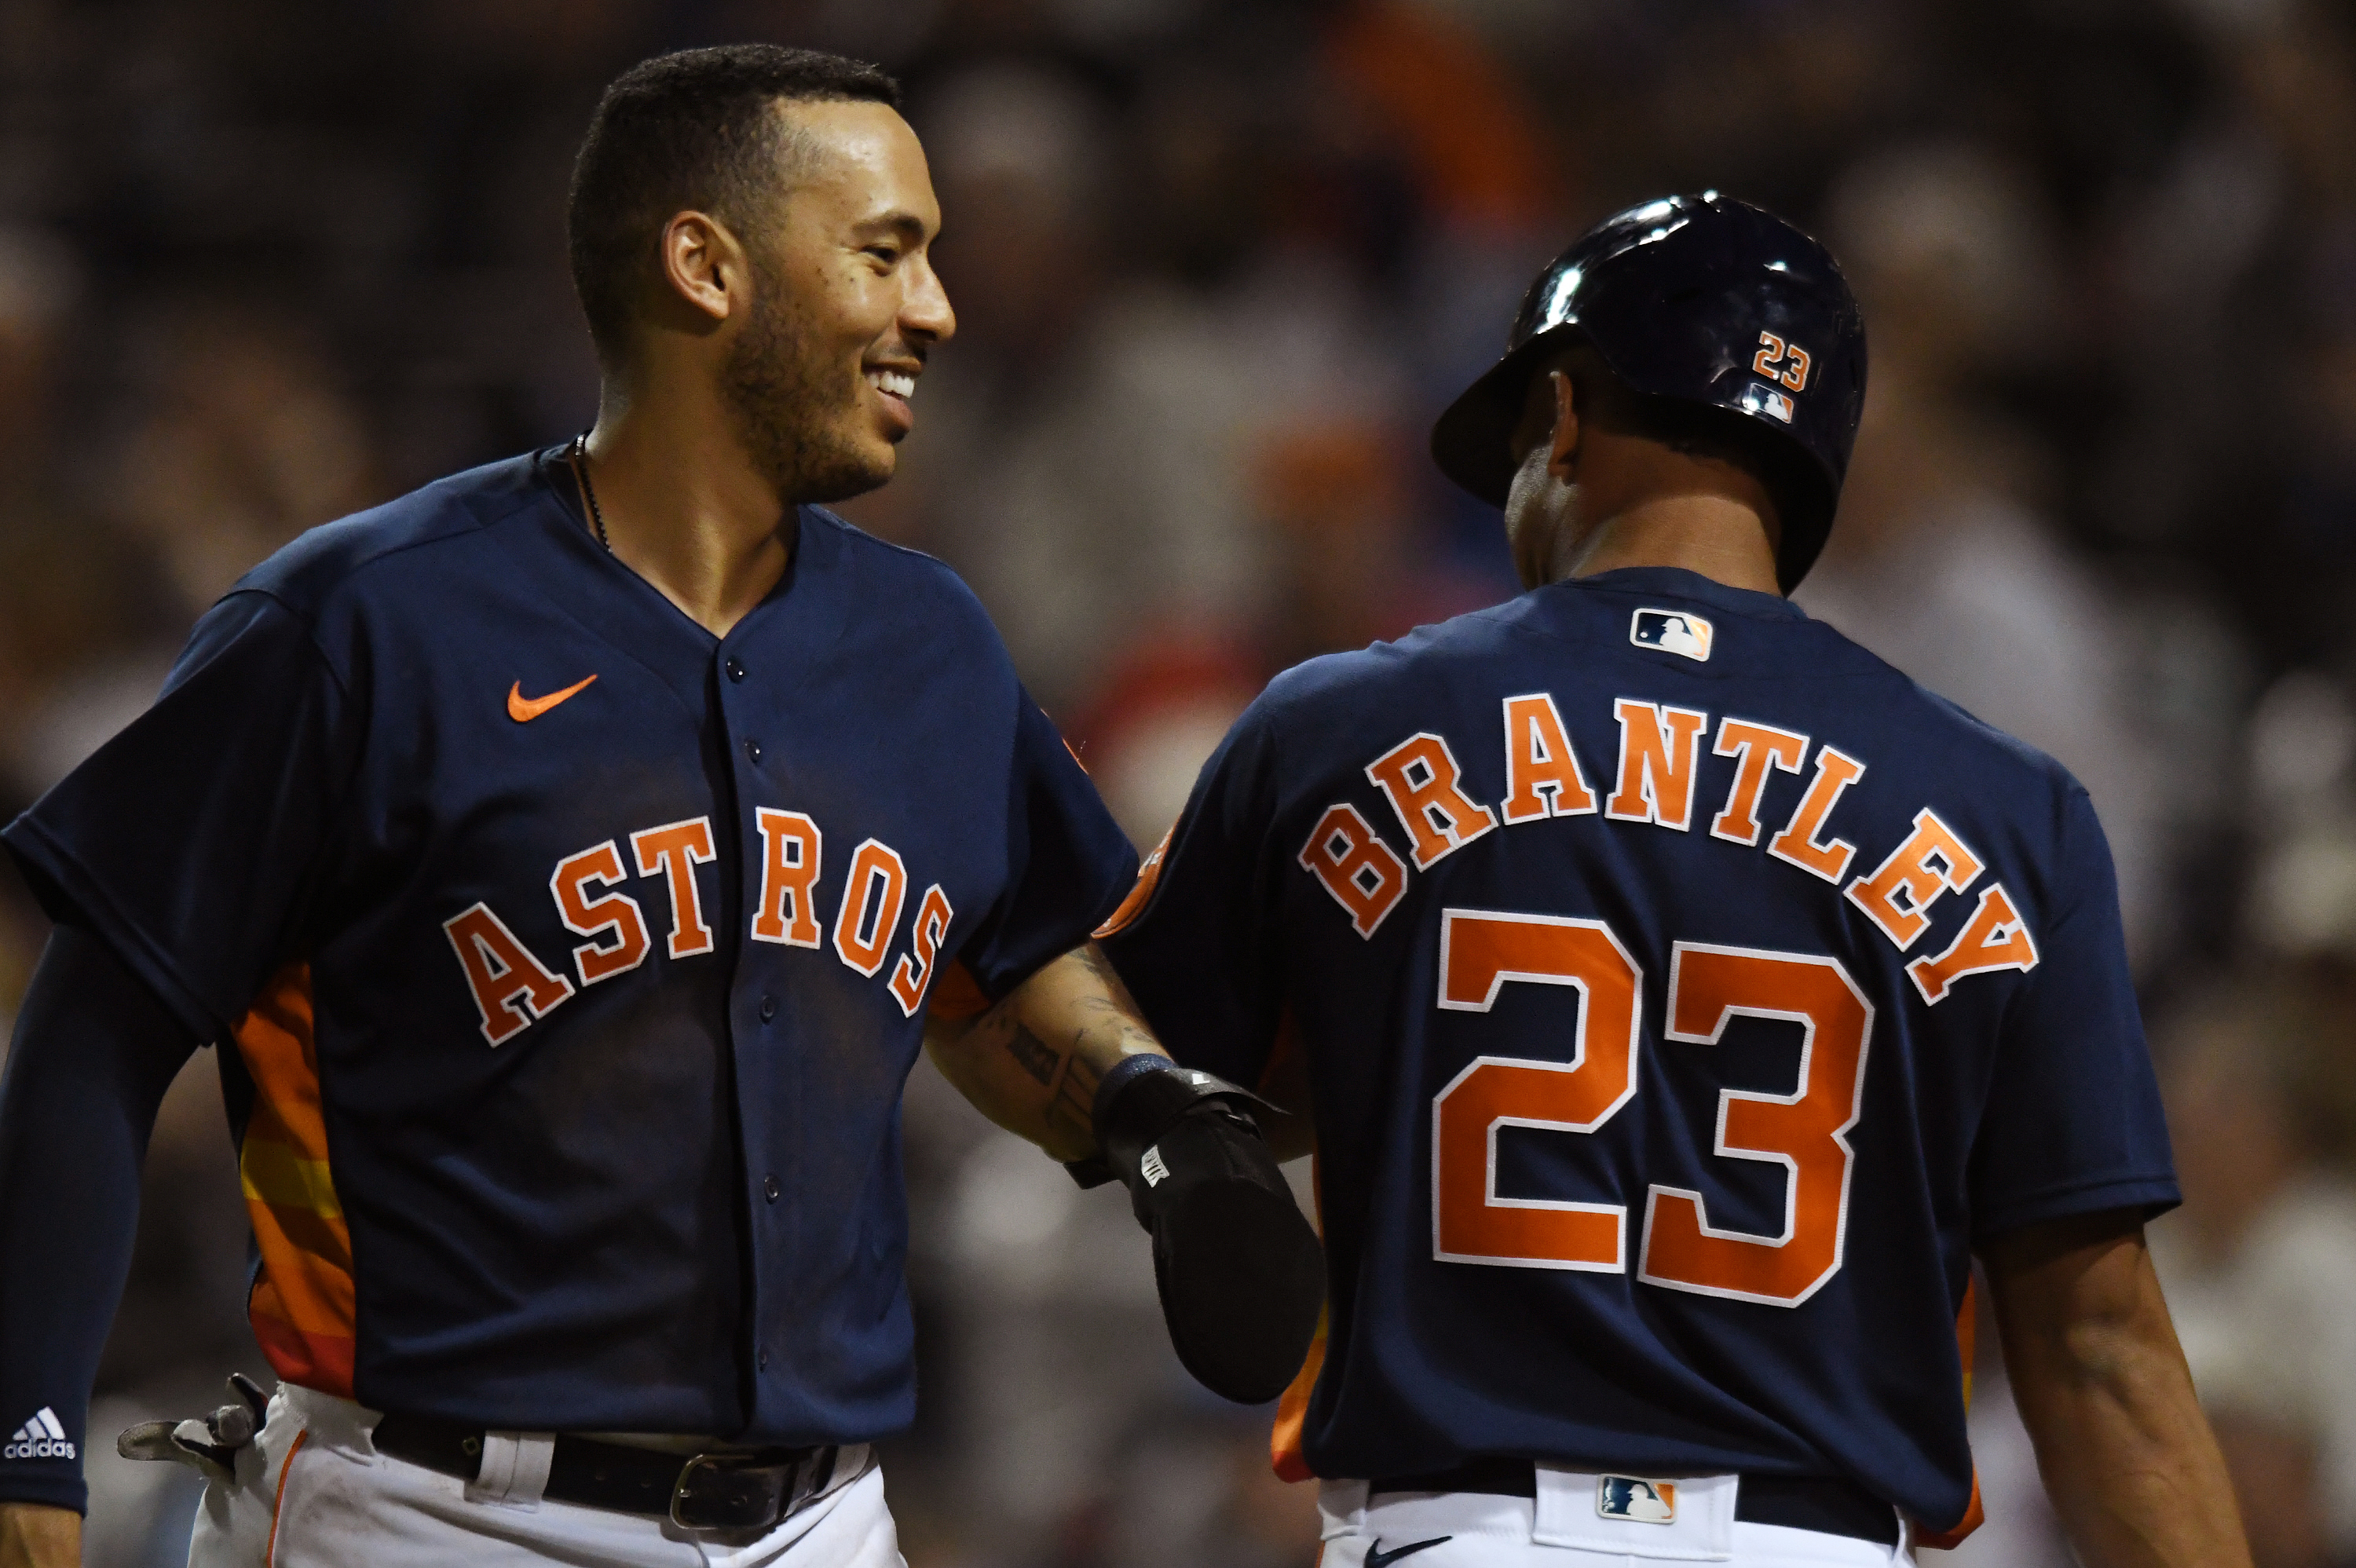 BP en español: Los mejores planes—Houston Astros - Baseball